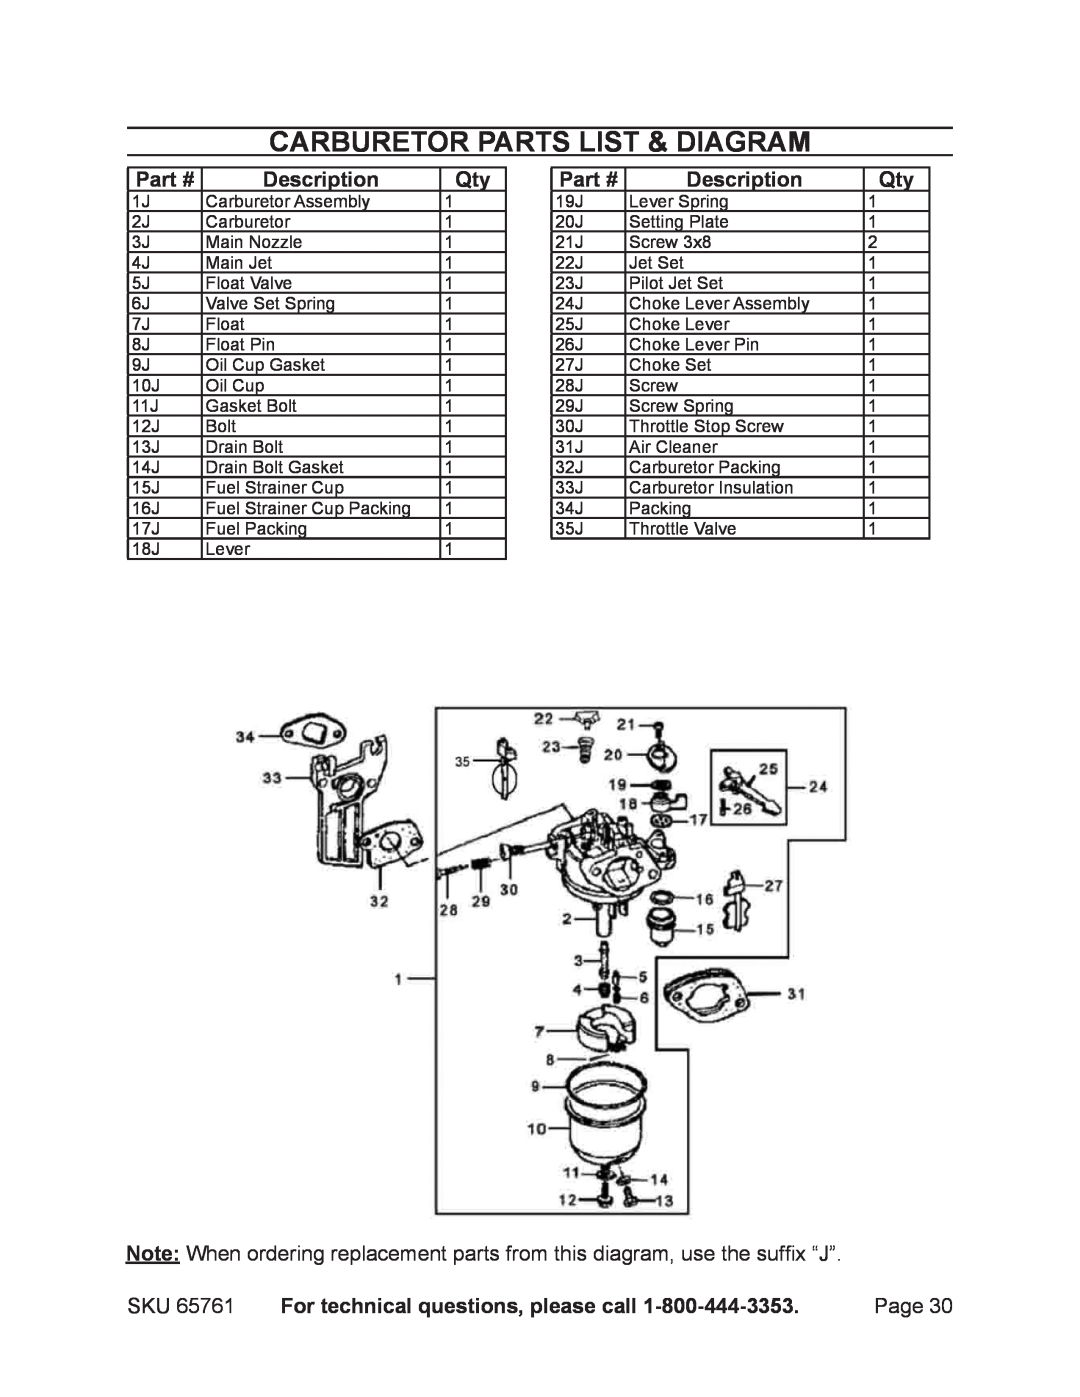 Harbor Freight Tools 65761 manual Carburetor parts list & diagram, Description, For technical questions, please call 